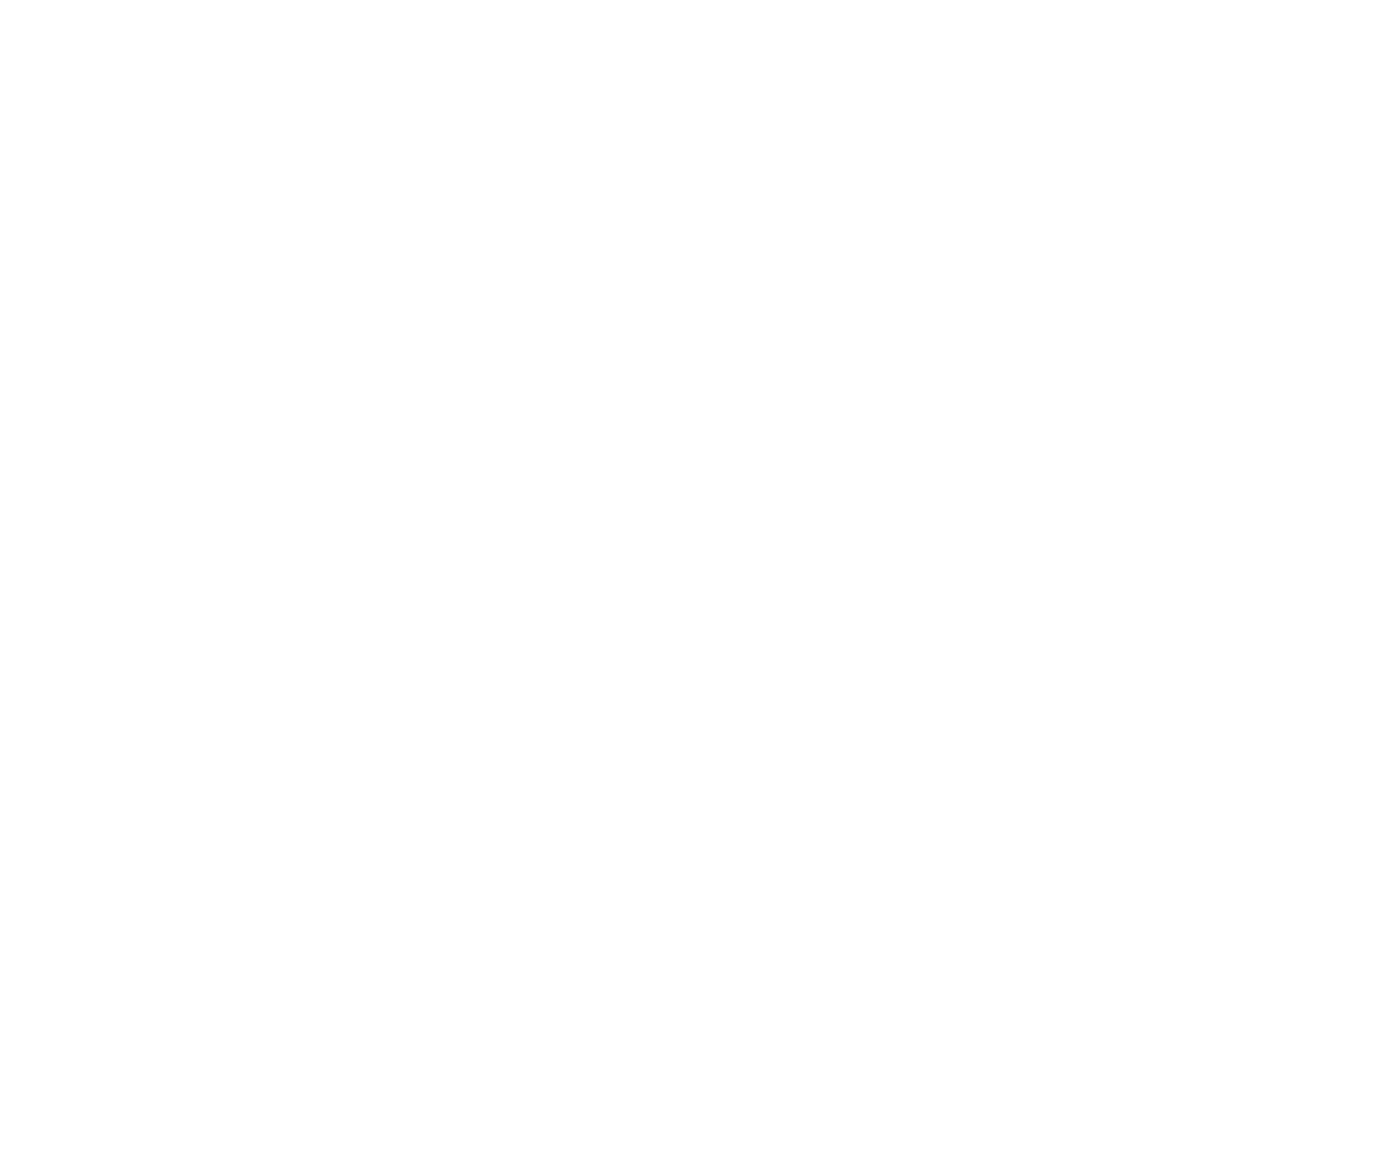 Den e di 28 edicion di Miss Gay Aruba cu e aña aki tabata un poco diferente, a competi 4 candidata dia 13 di november   